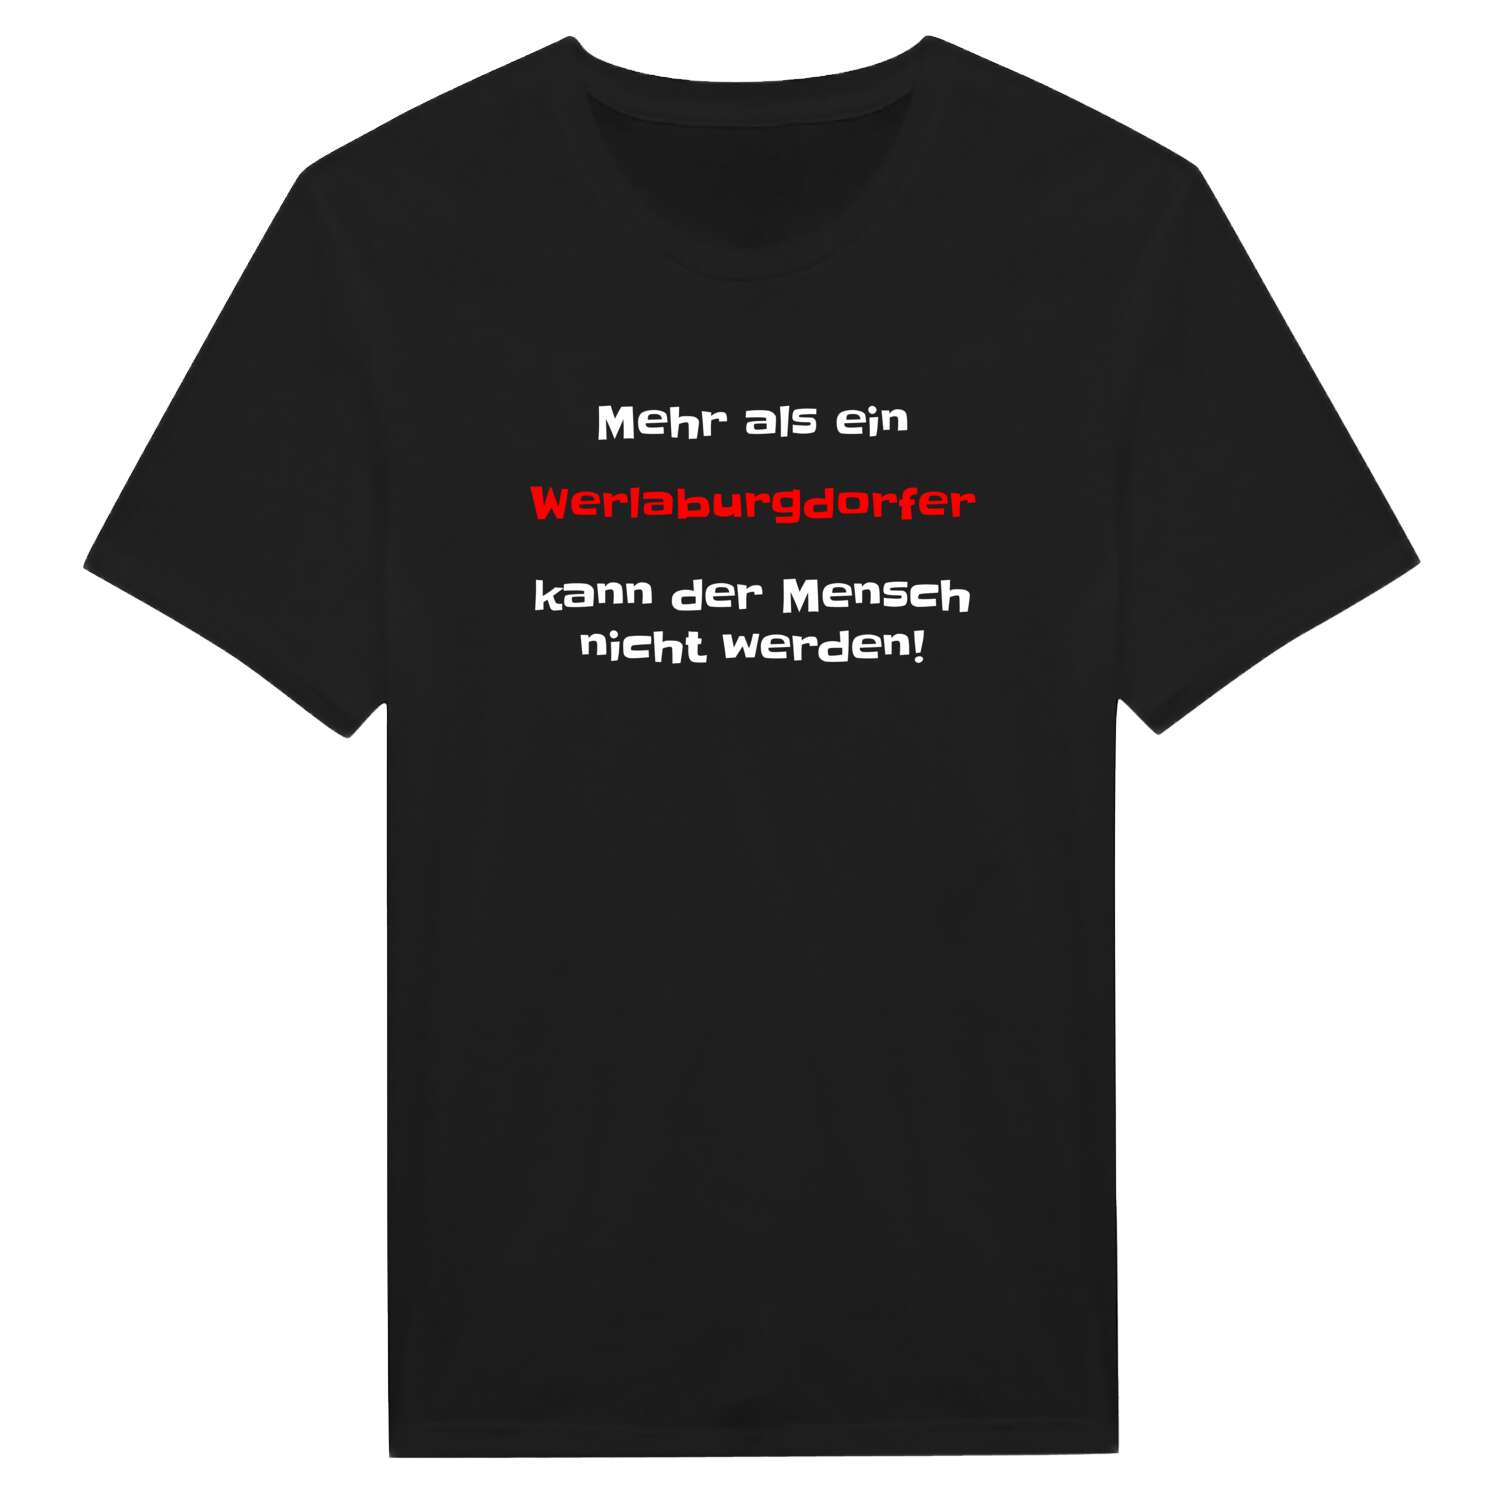 Werlaburgdorf T-Shirt »Mehr als ein«